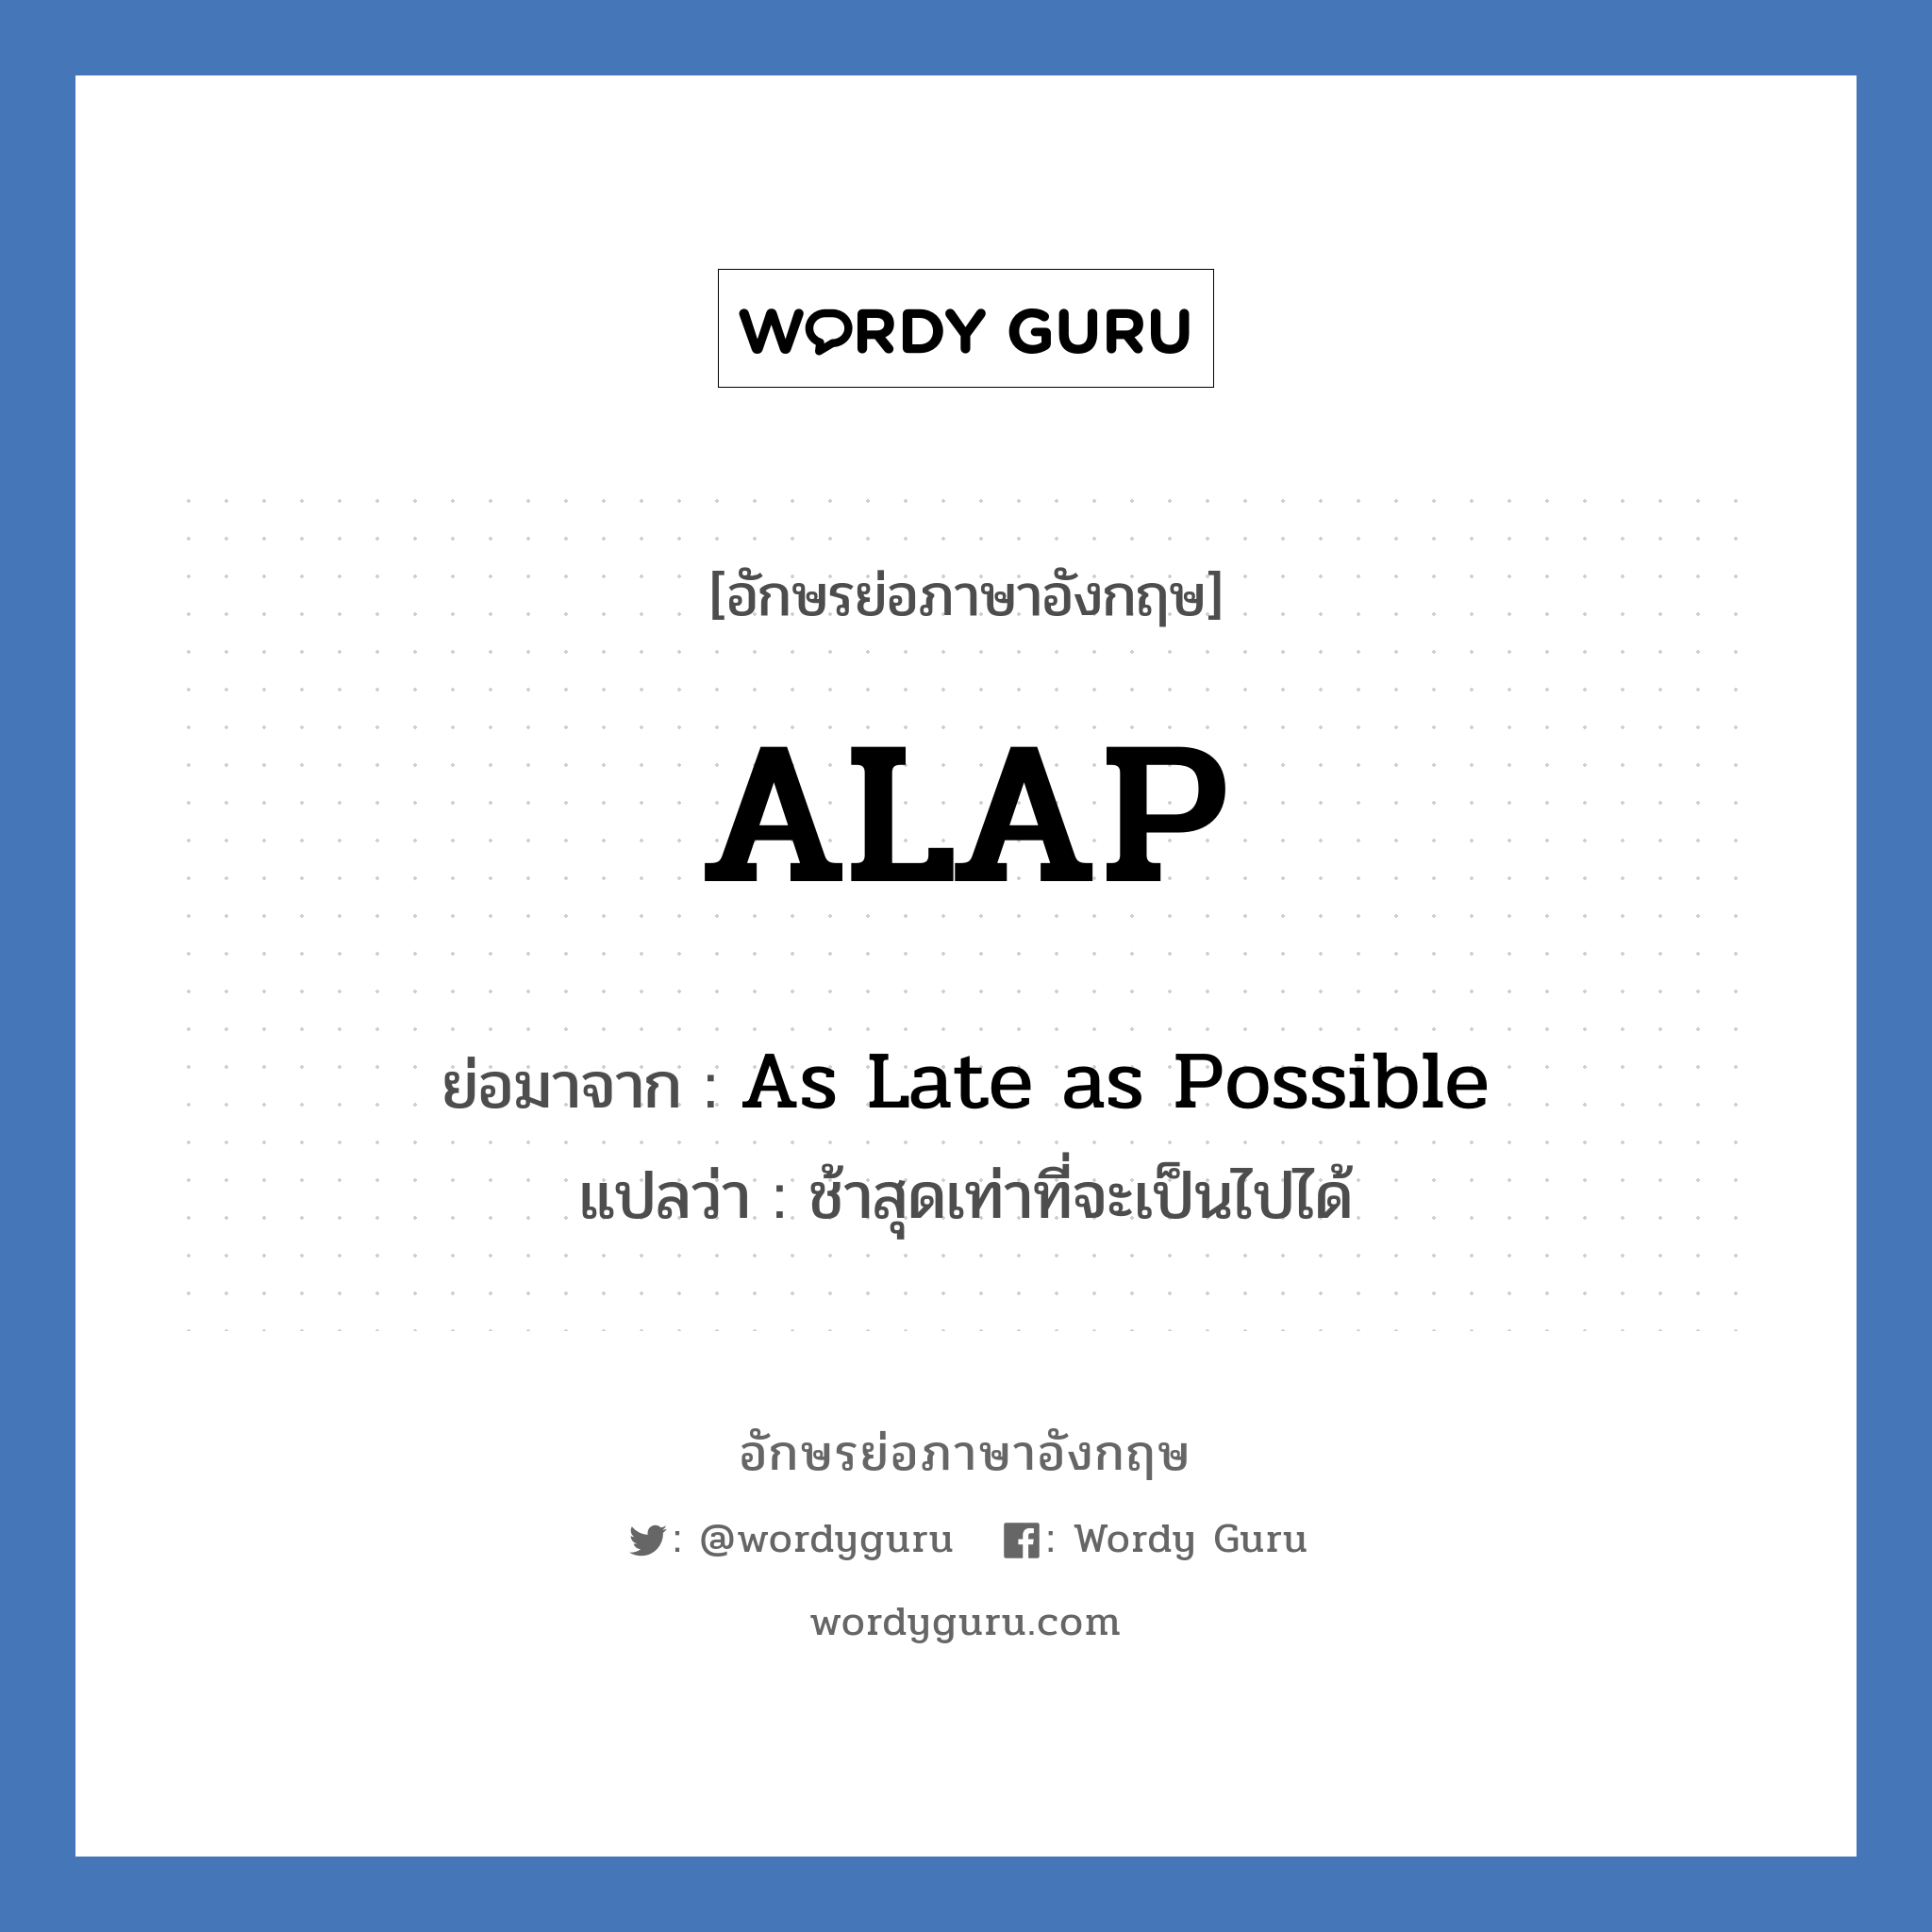 As Late as Possible คำย่อคือ? แปลว่า?, อักษรย่อภาษาอังกฤษ As Late as Possible ย่อมาจาก ALAP แปลว่า ช้าสุดเท่าที่จะเป็นไปได้